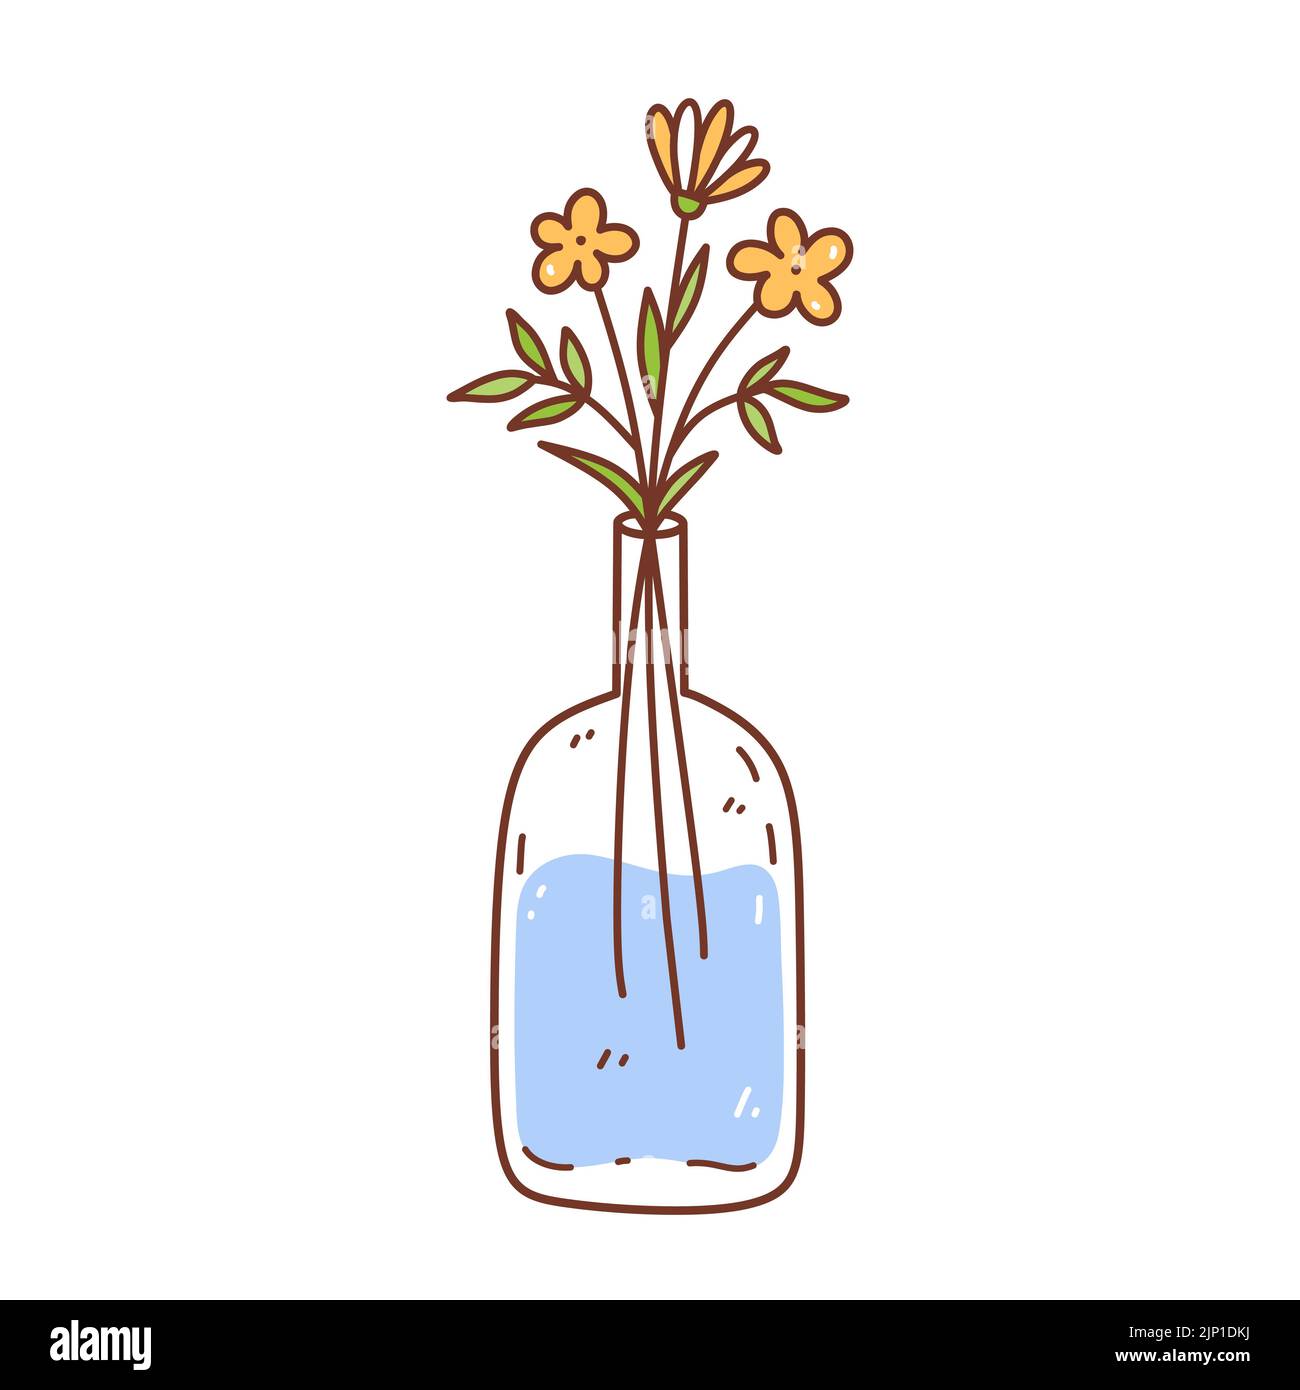 Jolies fleurs jaunes dans un vase en verre isolé sur fond blanc. Illustration vectorielle dessinée à la main, style doodle. Parfait pour les cartes, le logo, les décorations, divers motifs. Illustration de Vecteur